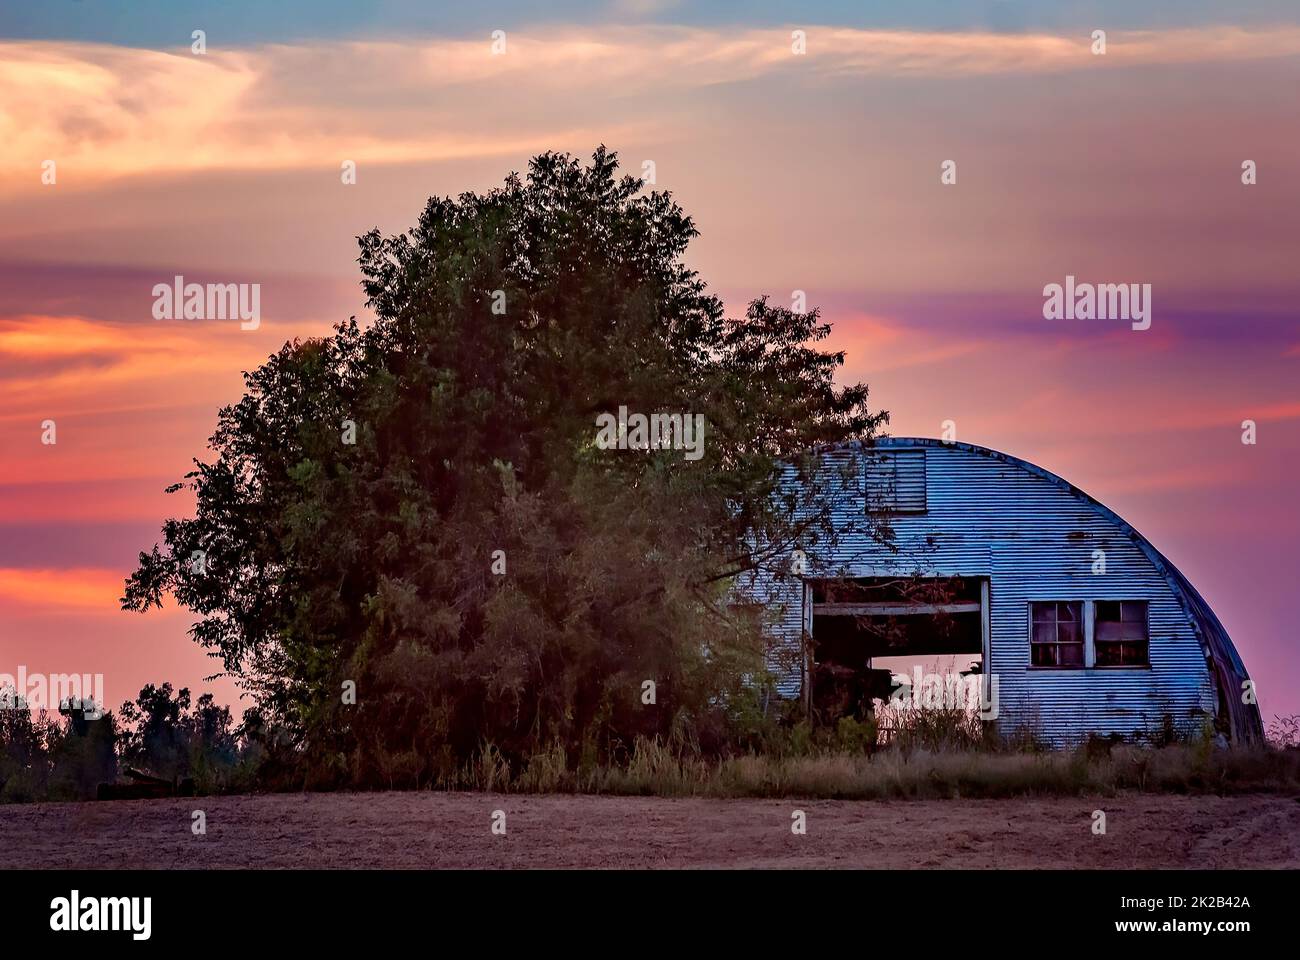 Eine kuppelförmige Metallscheune ist bei Sonnenuntergang am 17. Oktober 2010 in Union City, Tennessee, abgebildet. Obion County beschäftigt sich hauptsächlich mit der Landwirtschaft. Stockfoto